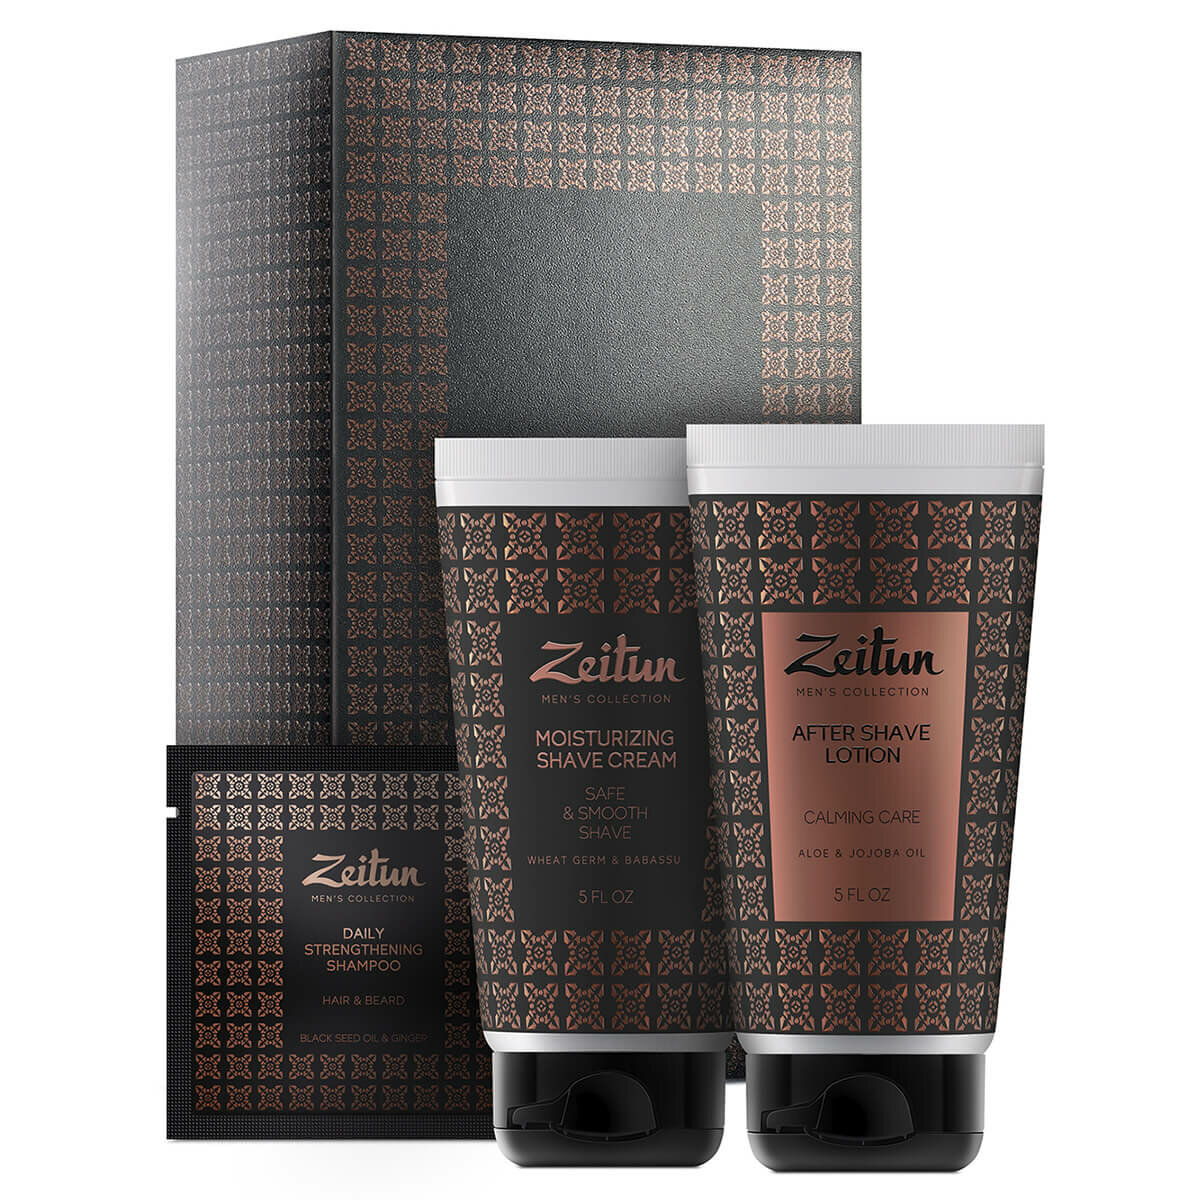 ZEITUN Подарочный набор для мужчин "Идеальная гладкость": крем для бритья, лосьон, шампунь, ZEITUN